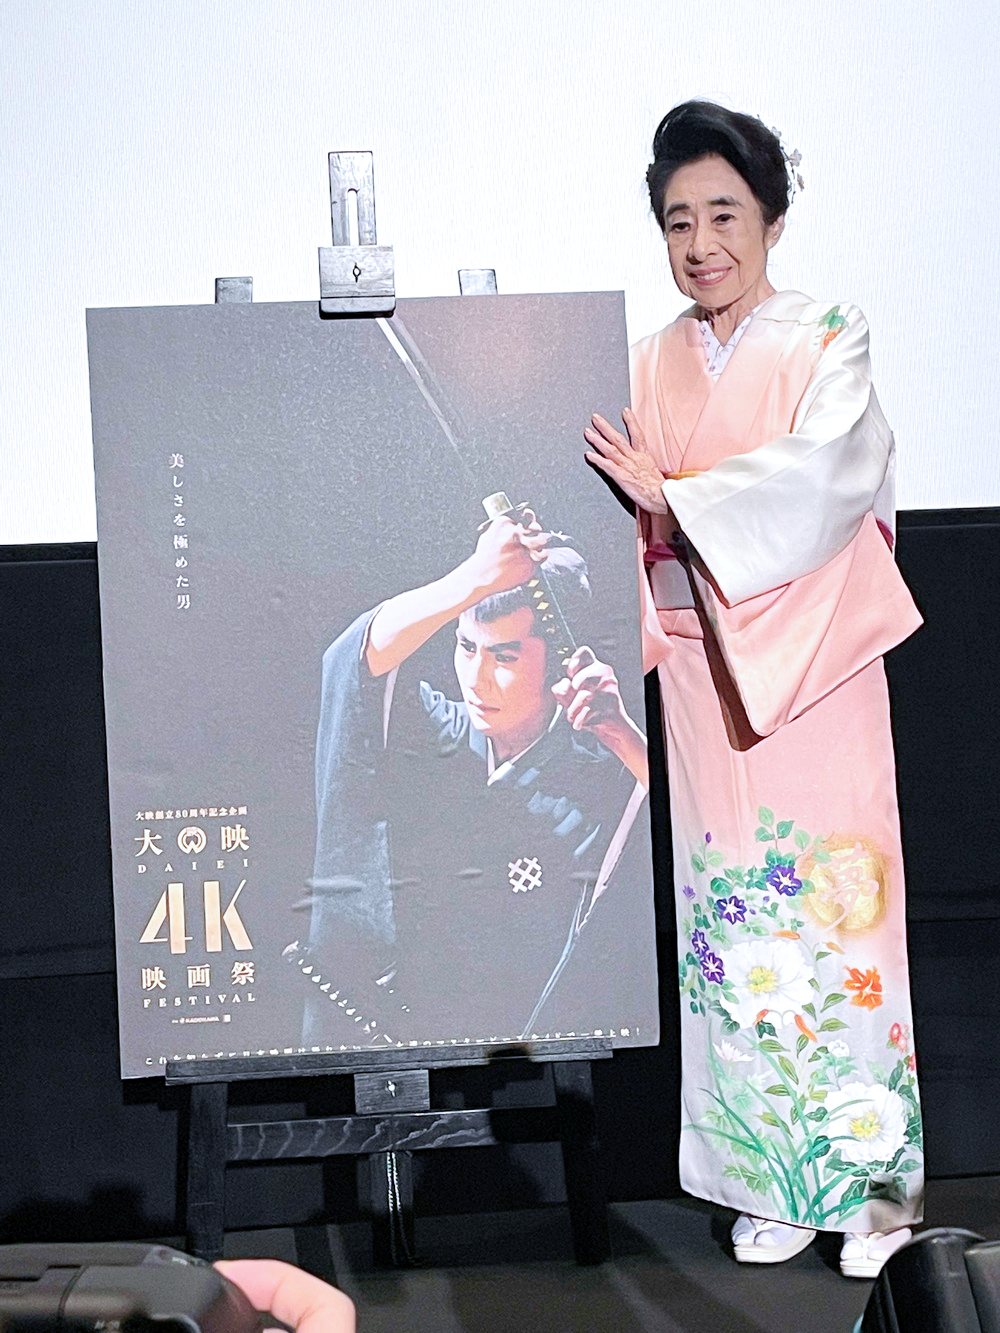 玉緒大映-4K-映画祭」の『大菩薩峠』